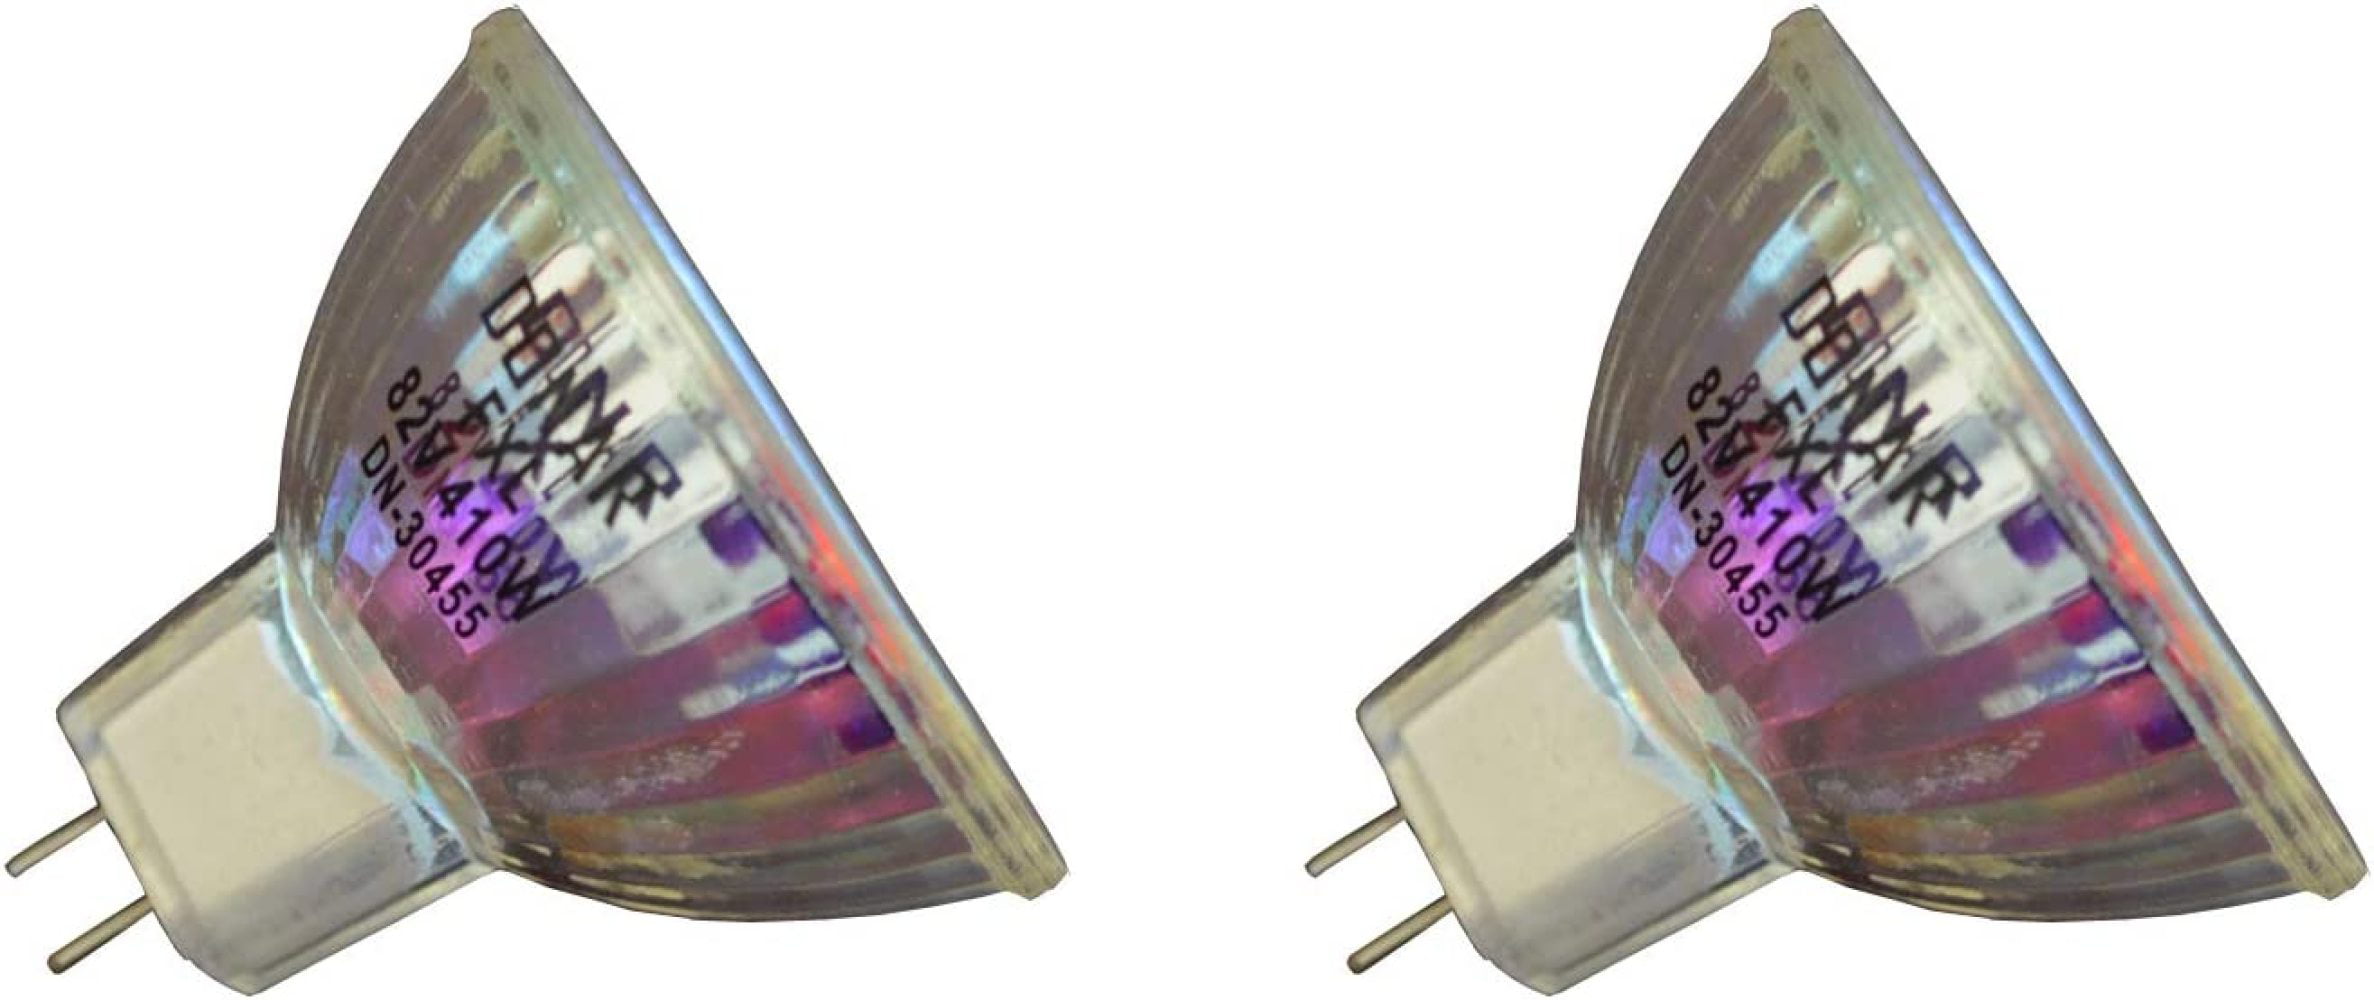 VA-FXL-6 99% Quartz Glass Apollo 410 Watt Overhead Projector Lamp 82 Volt 